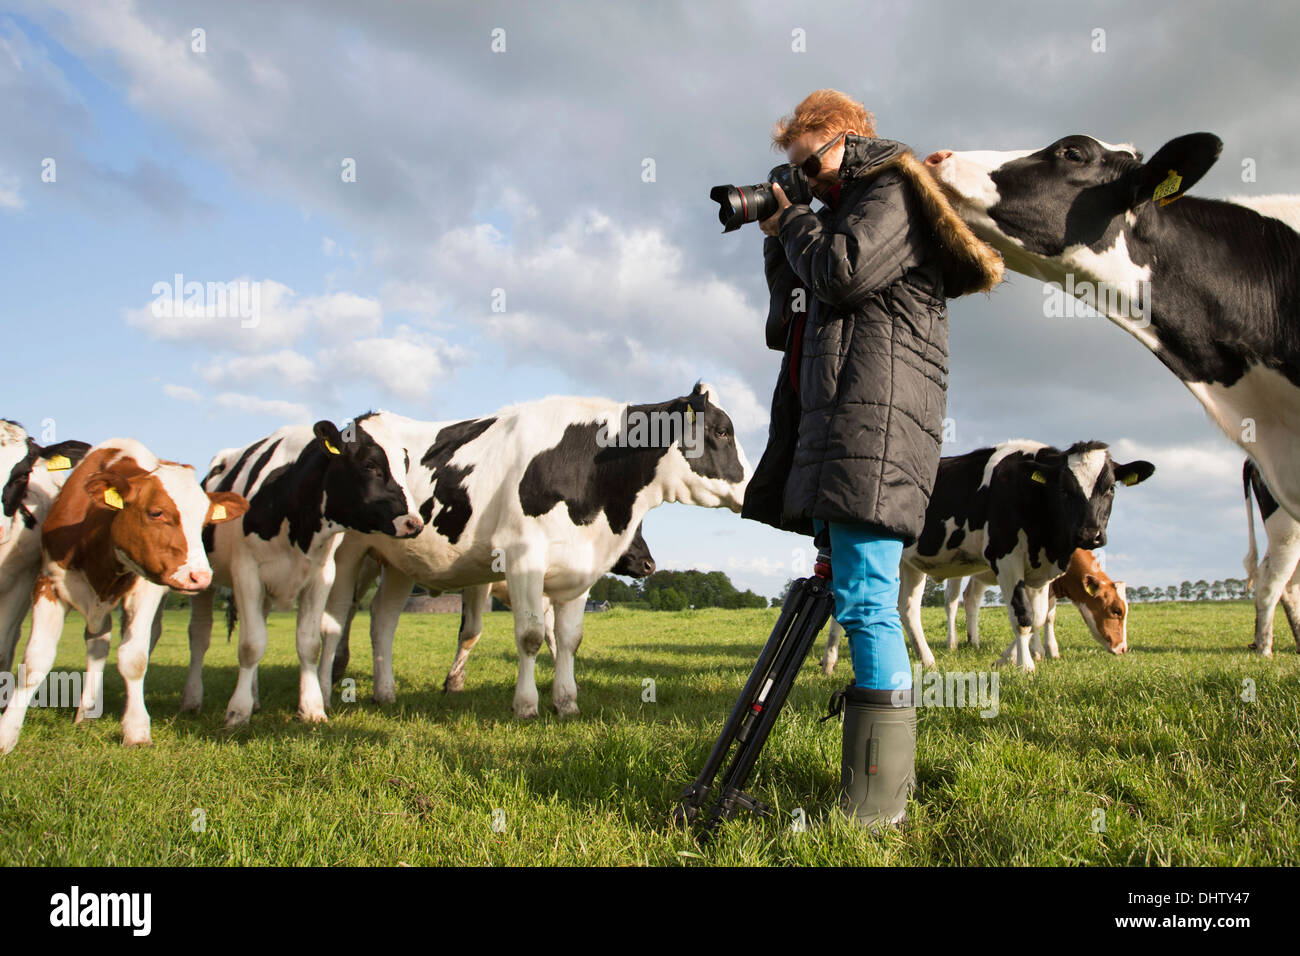 Pays-bas, Weesp, les vaches dans le pré. Marjolijn photographe officiel de Van. Banque D'Images